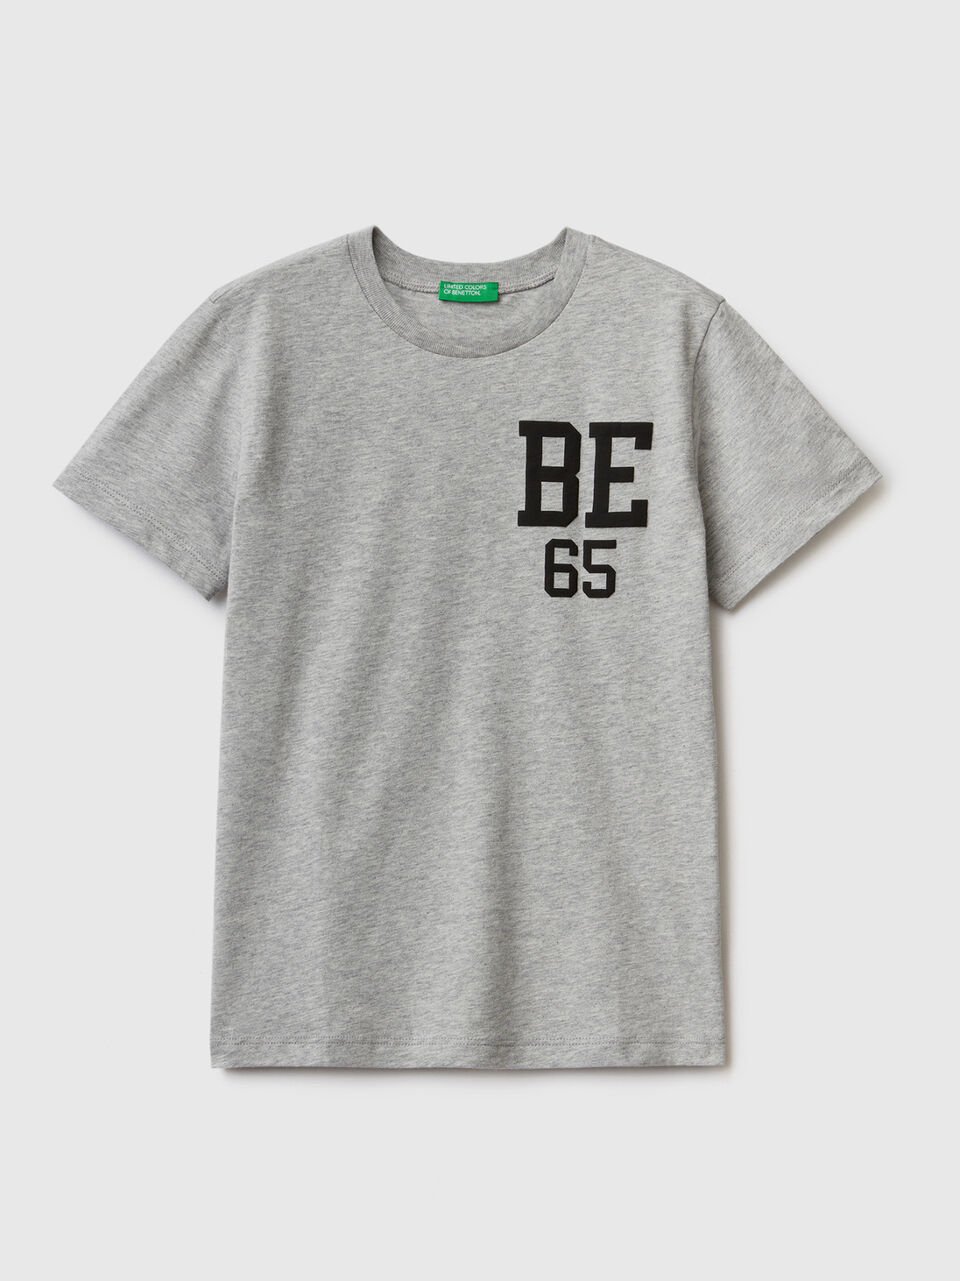 Prezzi Bassi T-shirt 100% cotone bio con logo please shop online